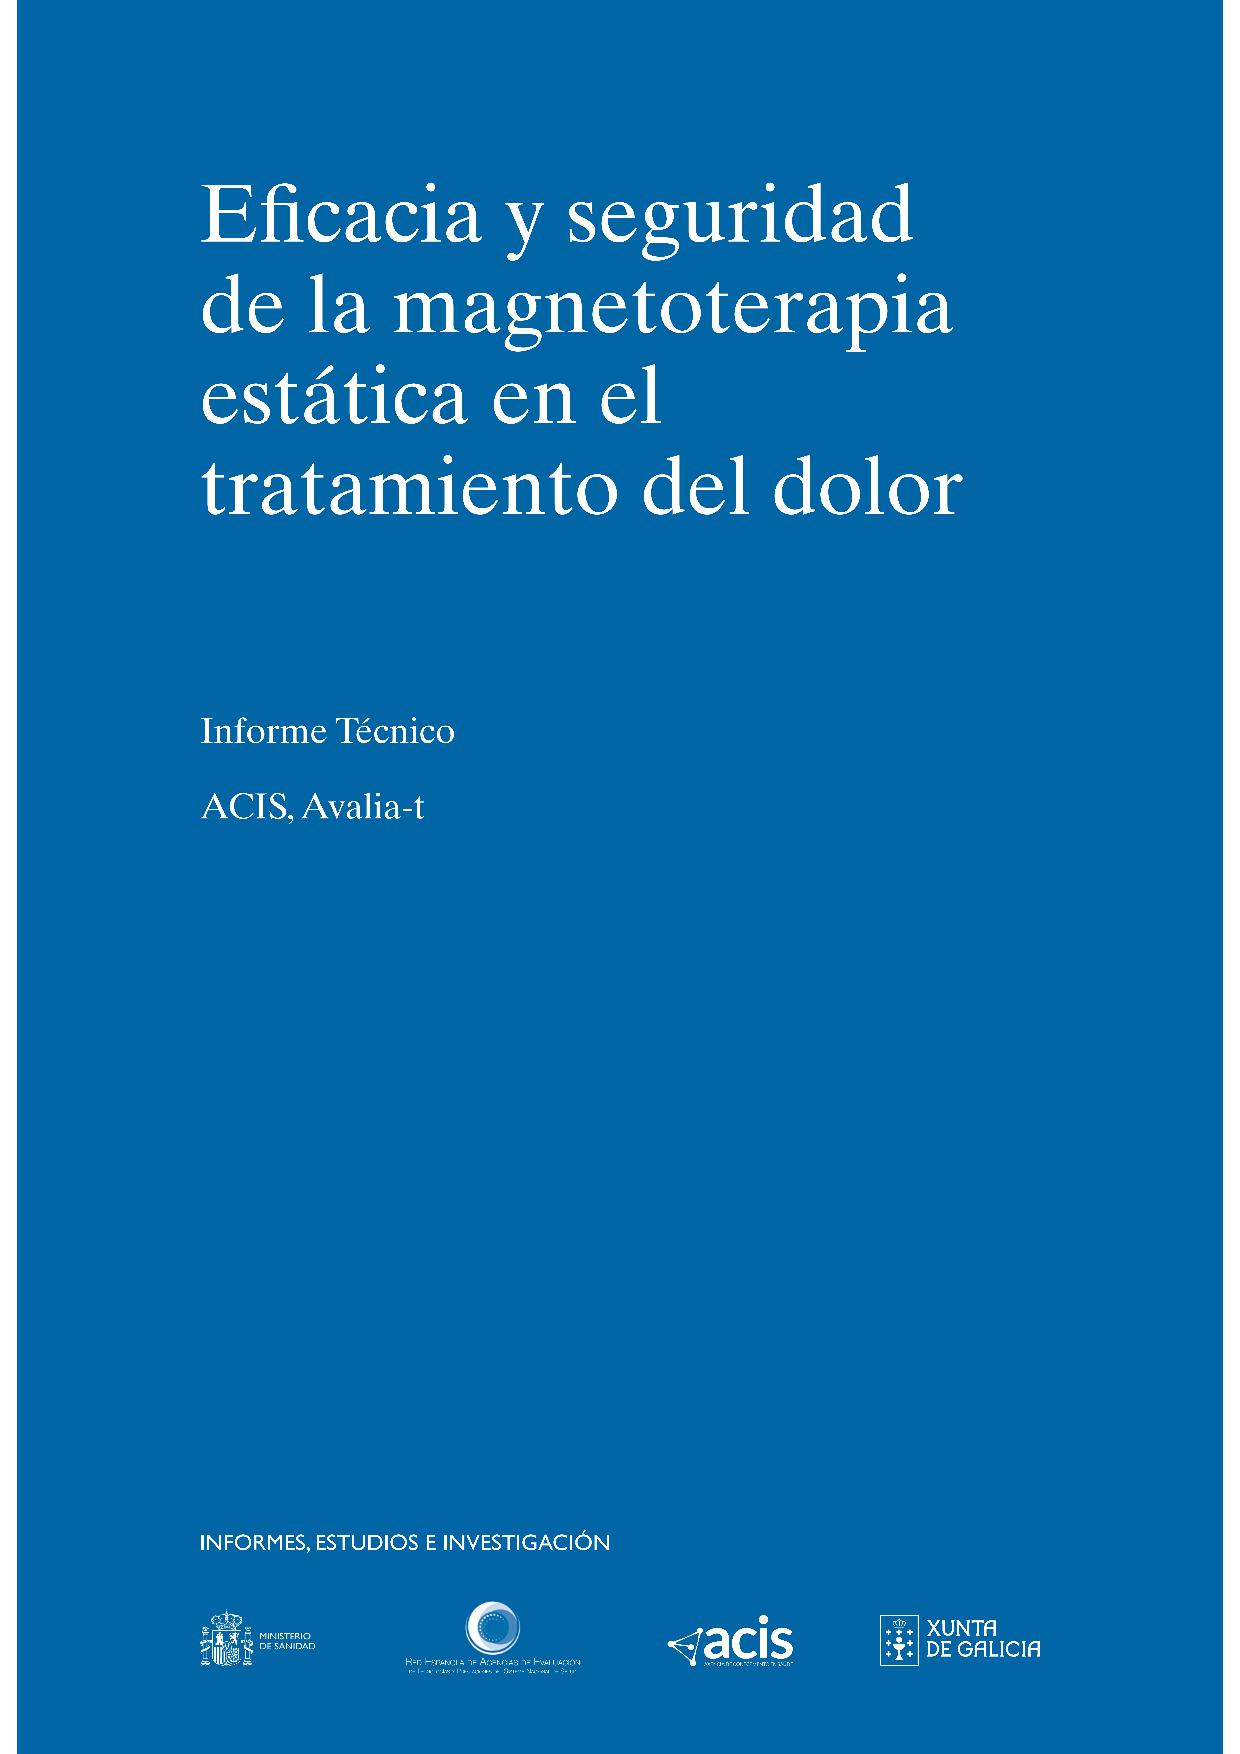 Imagen de portada del libro Eficacia y seguridad de la magnetoterapia estática en el tratamiento del dolor